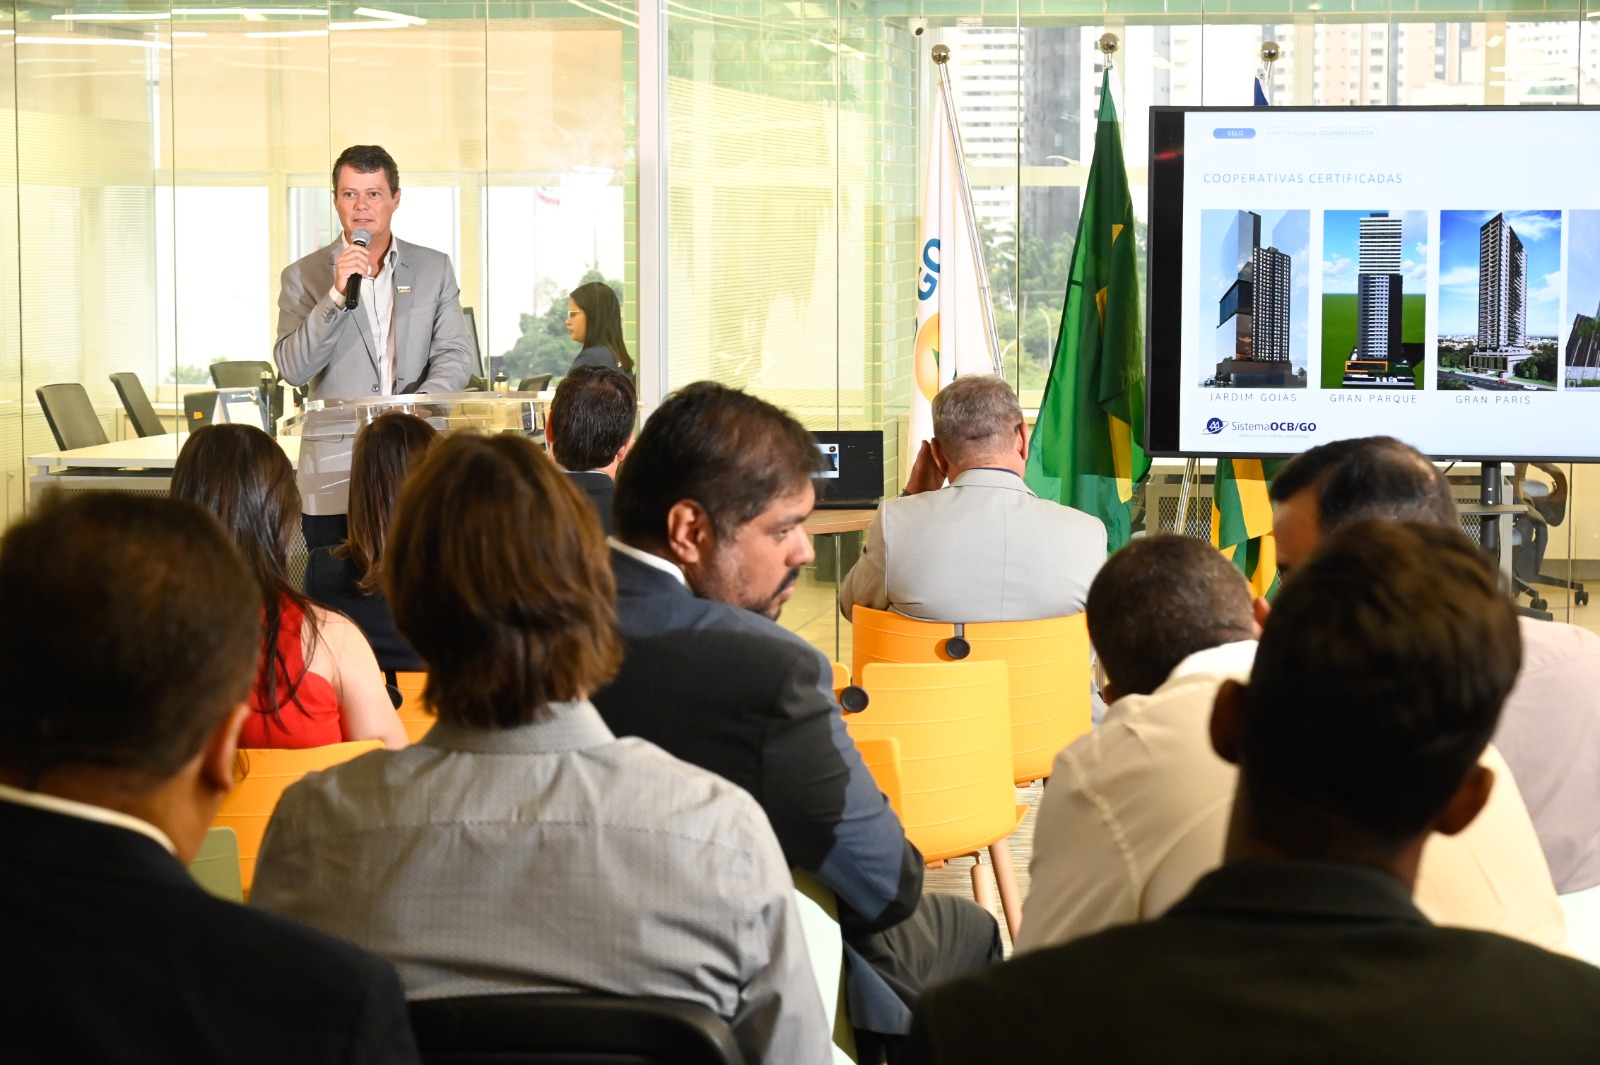 Entrega do Selo de Conformidade a cooperativas habitacionais na sede da OCB Goiás